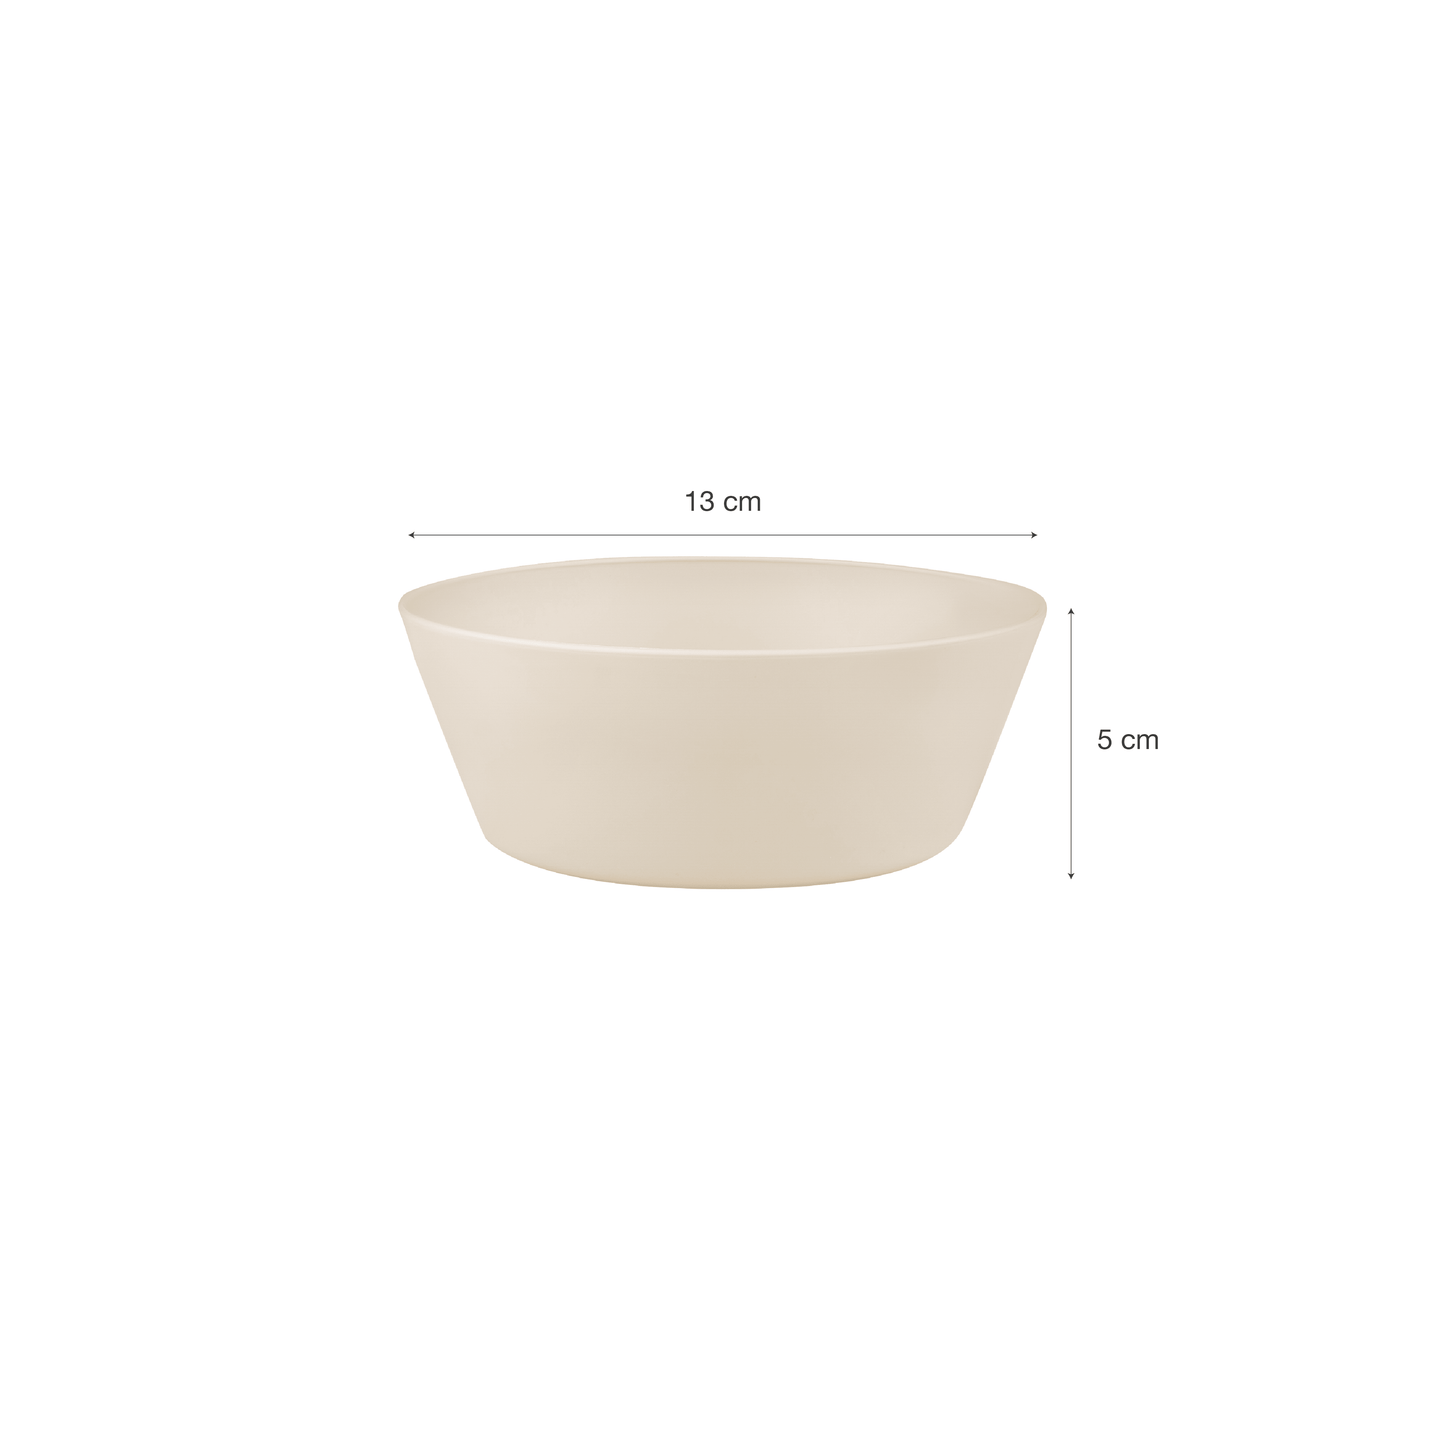 Bio Based Bowls - Set of 4 - Pink/ Cream